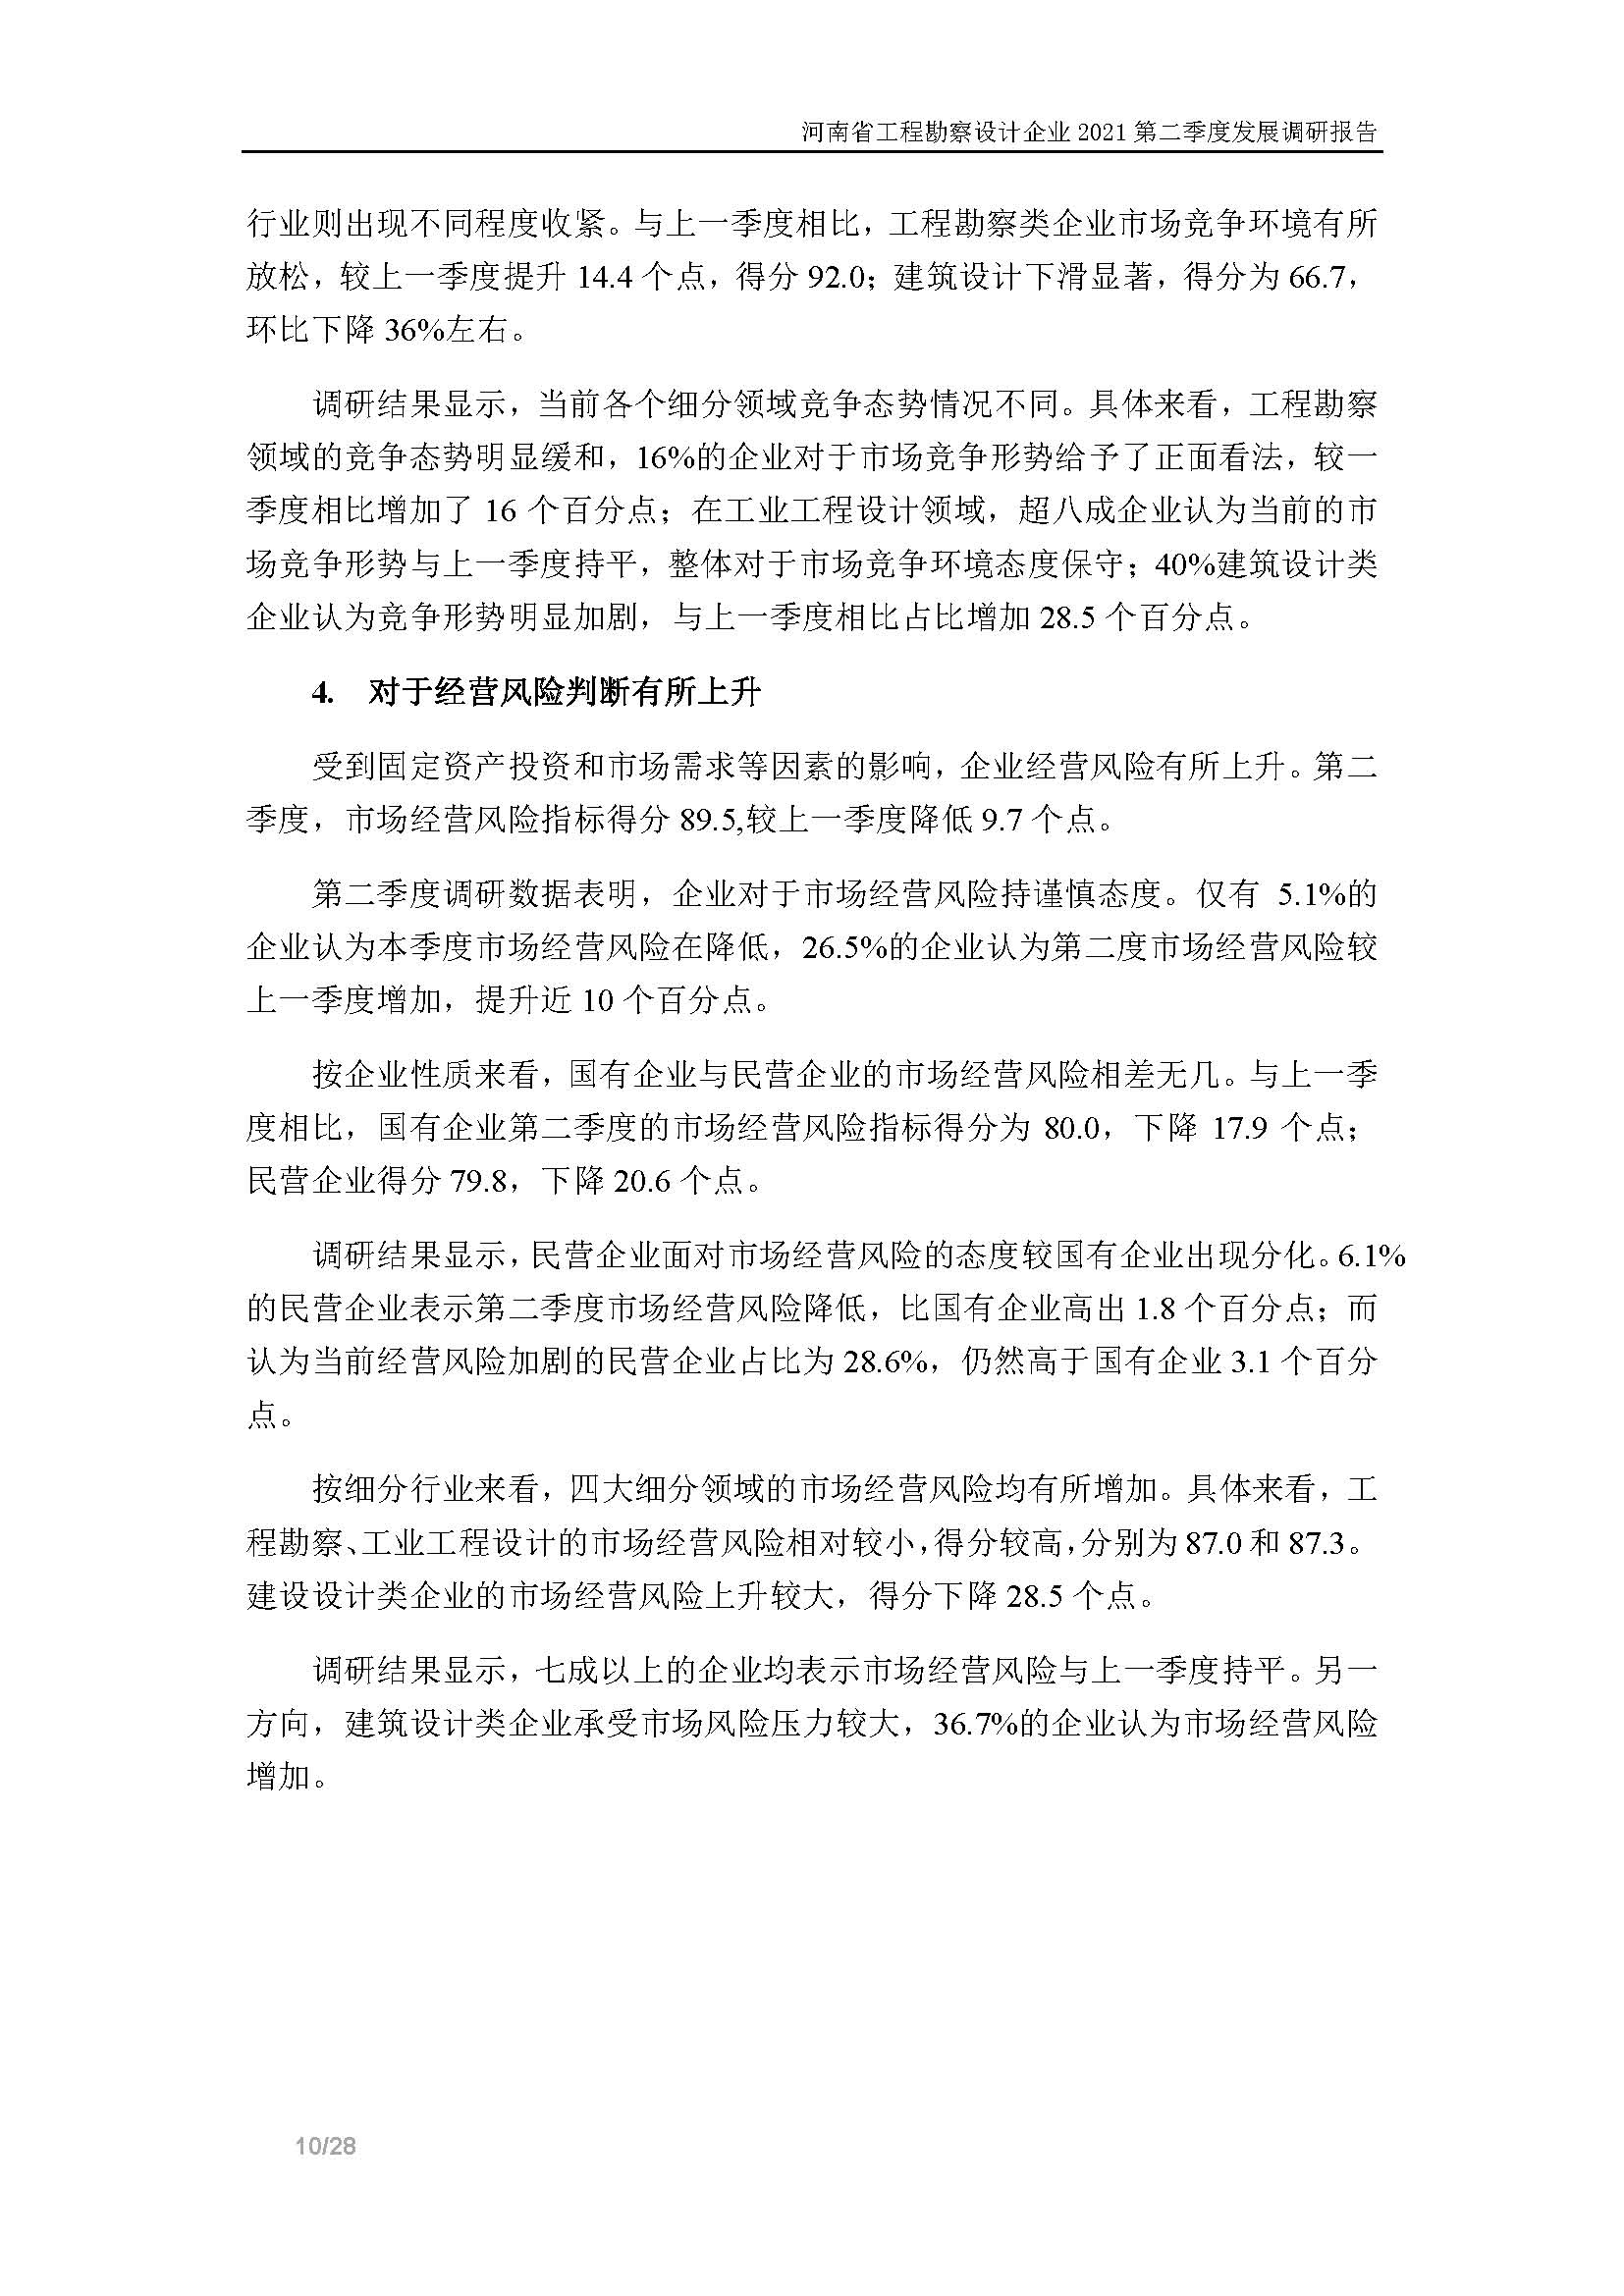 河南省工程勘察设计企业2021第二季度发展调研报告-公开版_页面_11.jpg